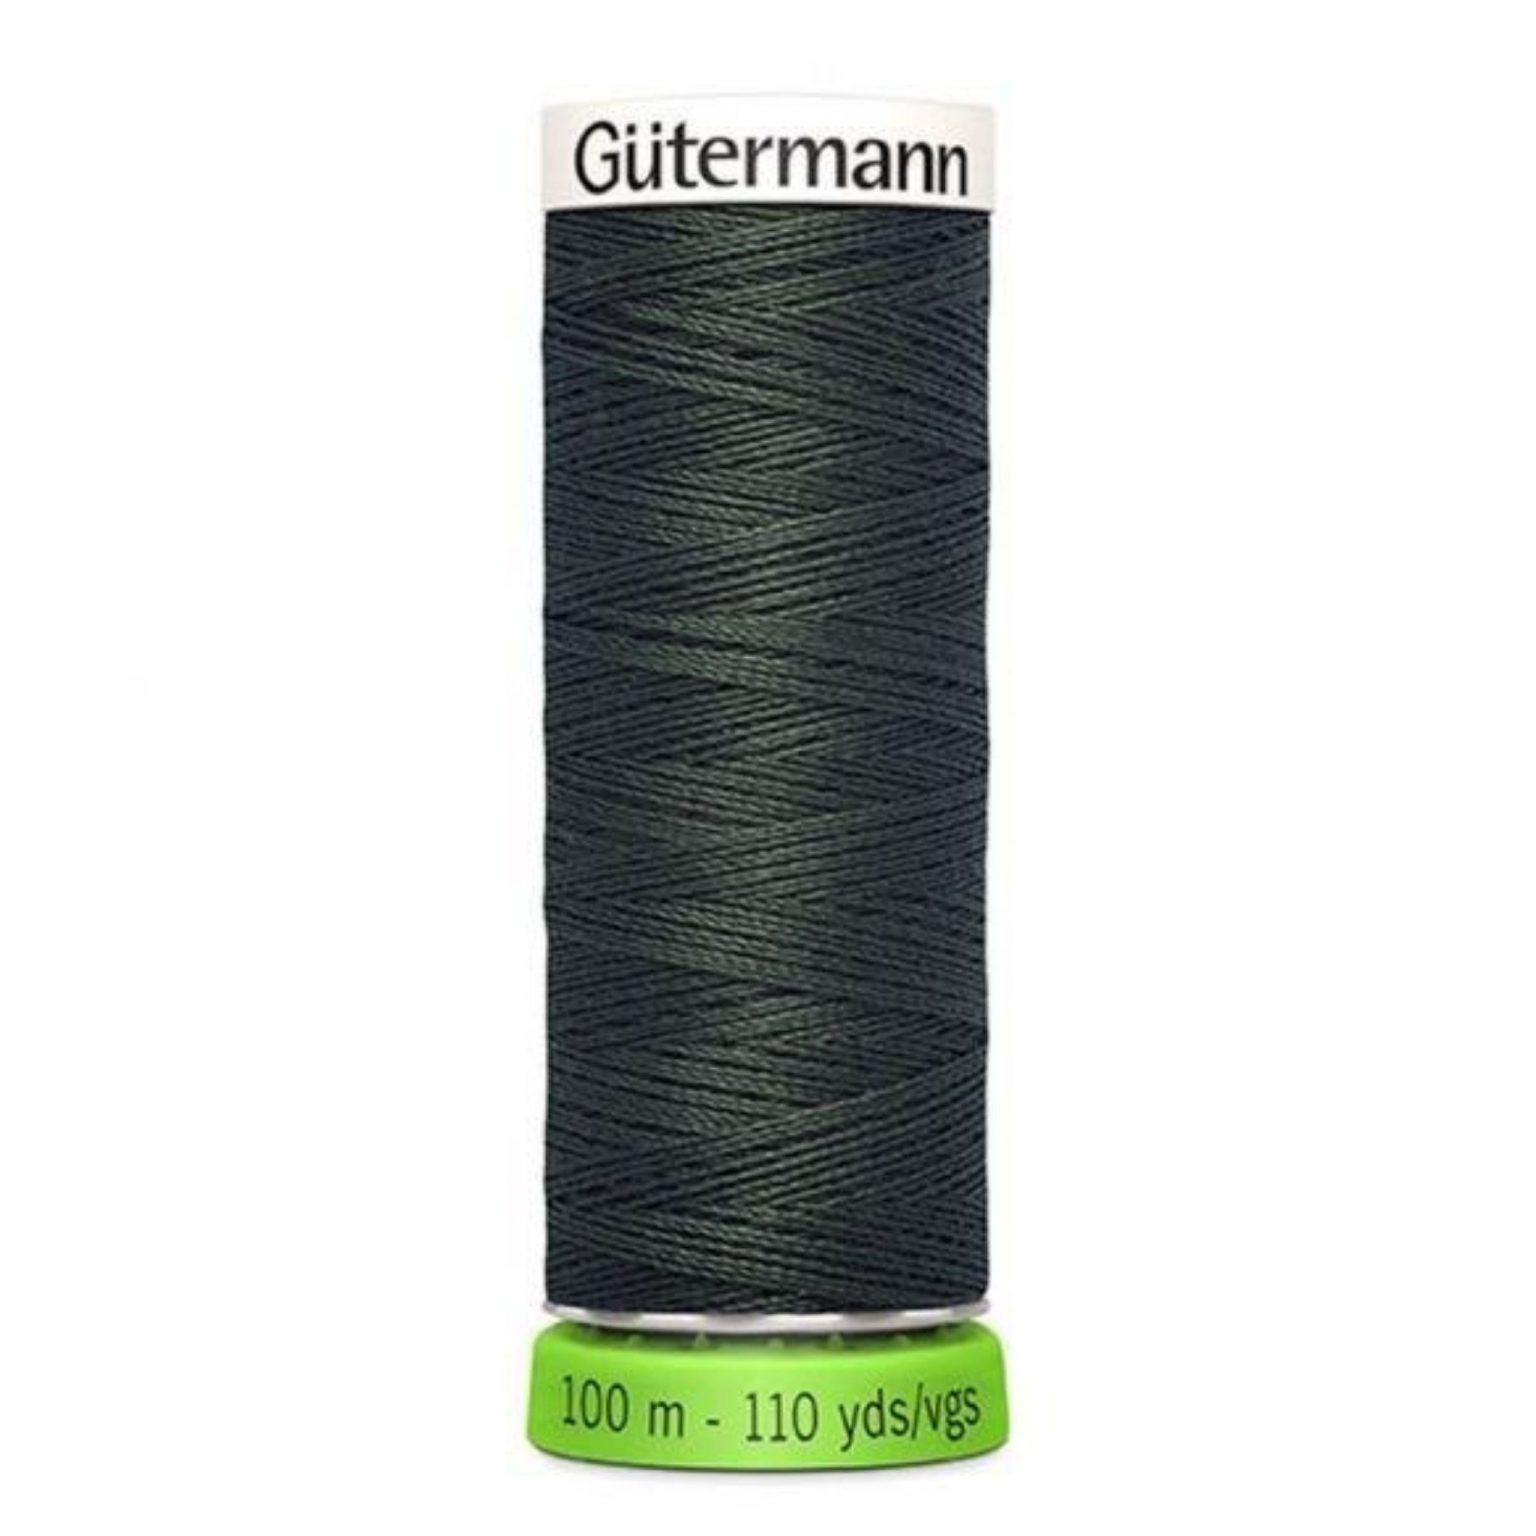 gutermann sewing thread in winter moss 861